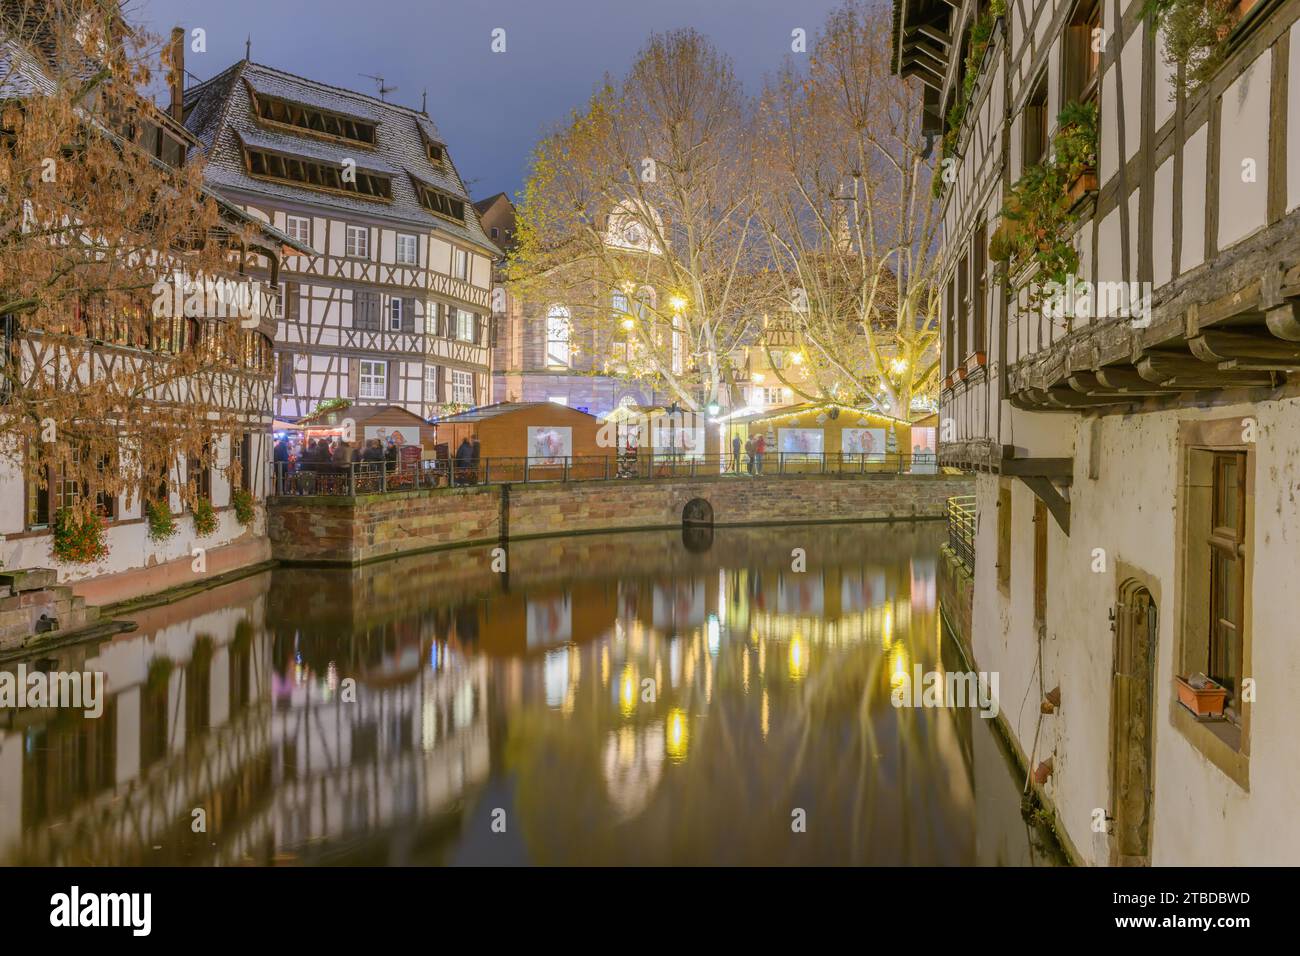 La petite France à Noël, un quartier pittoresque du centre historique de Strasbourg. Inscrit au patrimoine mondial de l'UNESCO. Bas-Rhin, ALS Banque D'Images